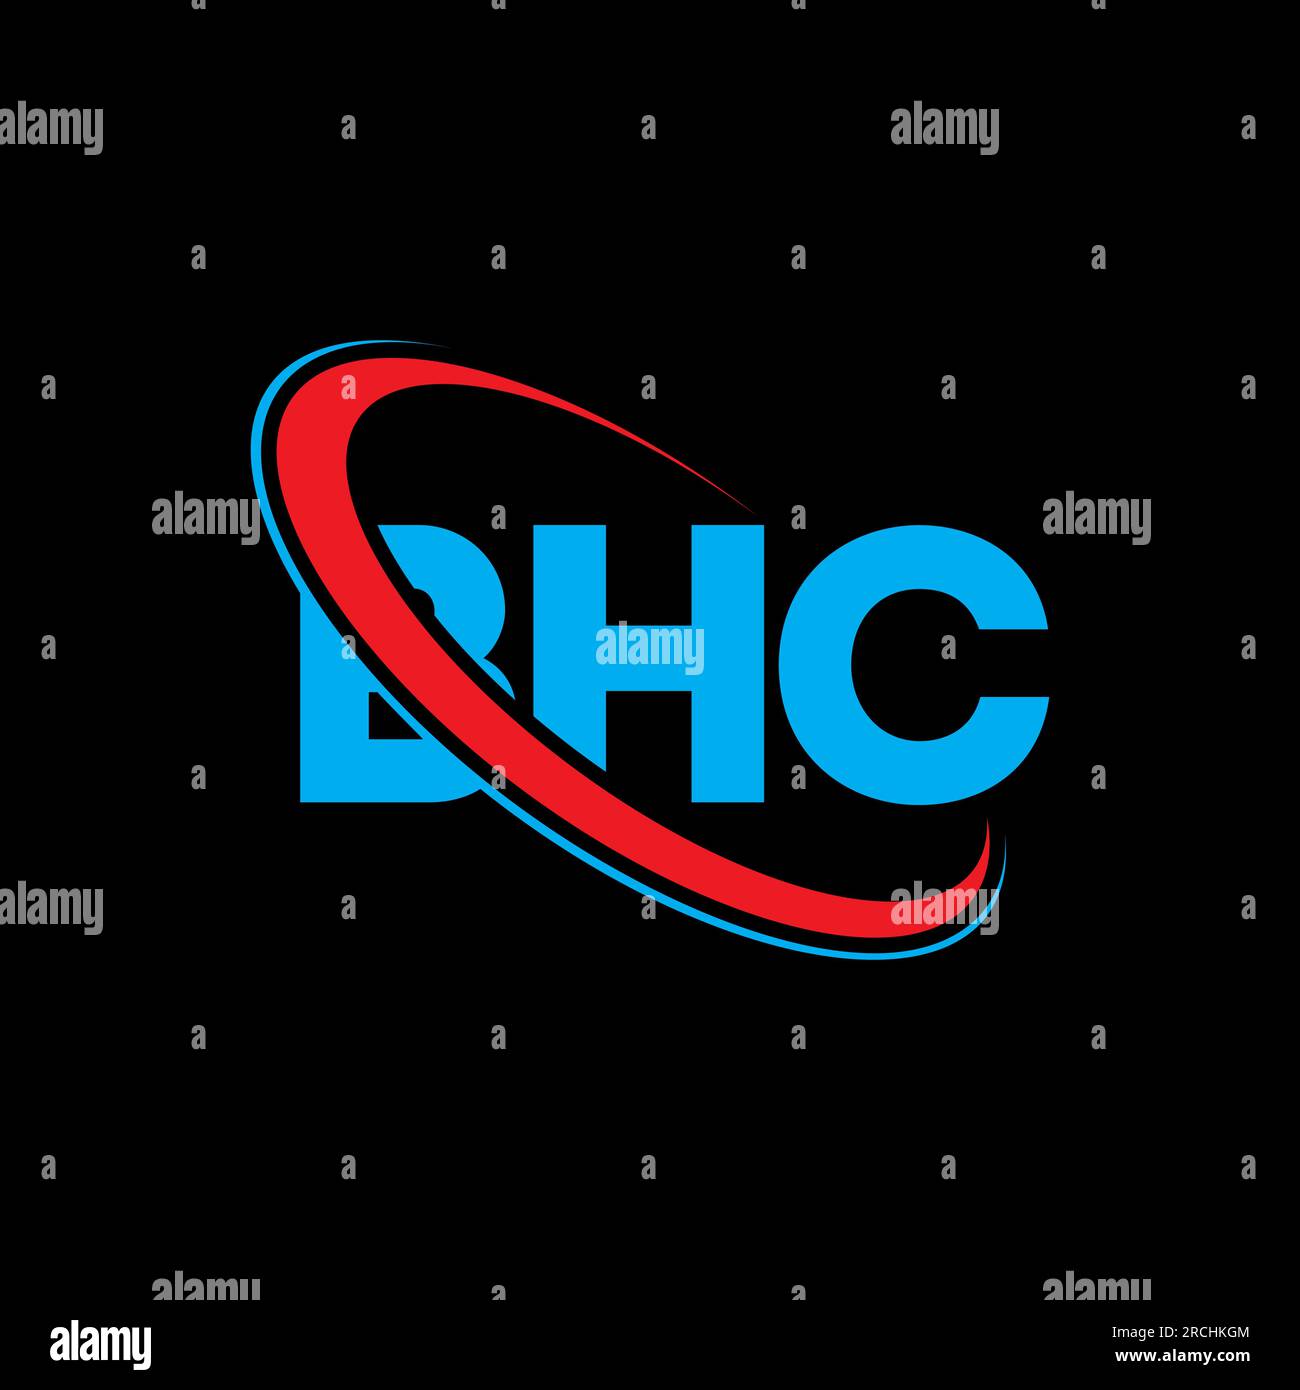 Monogram letters initial logo design bhc Vector Image